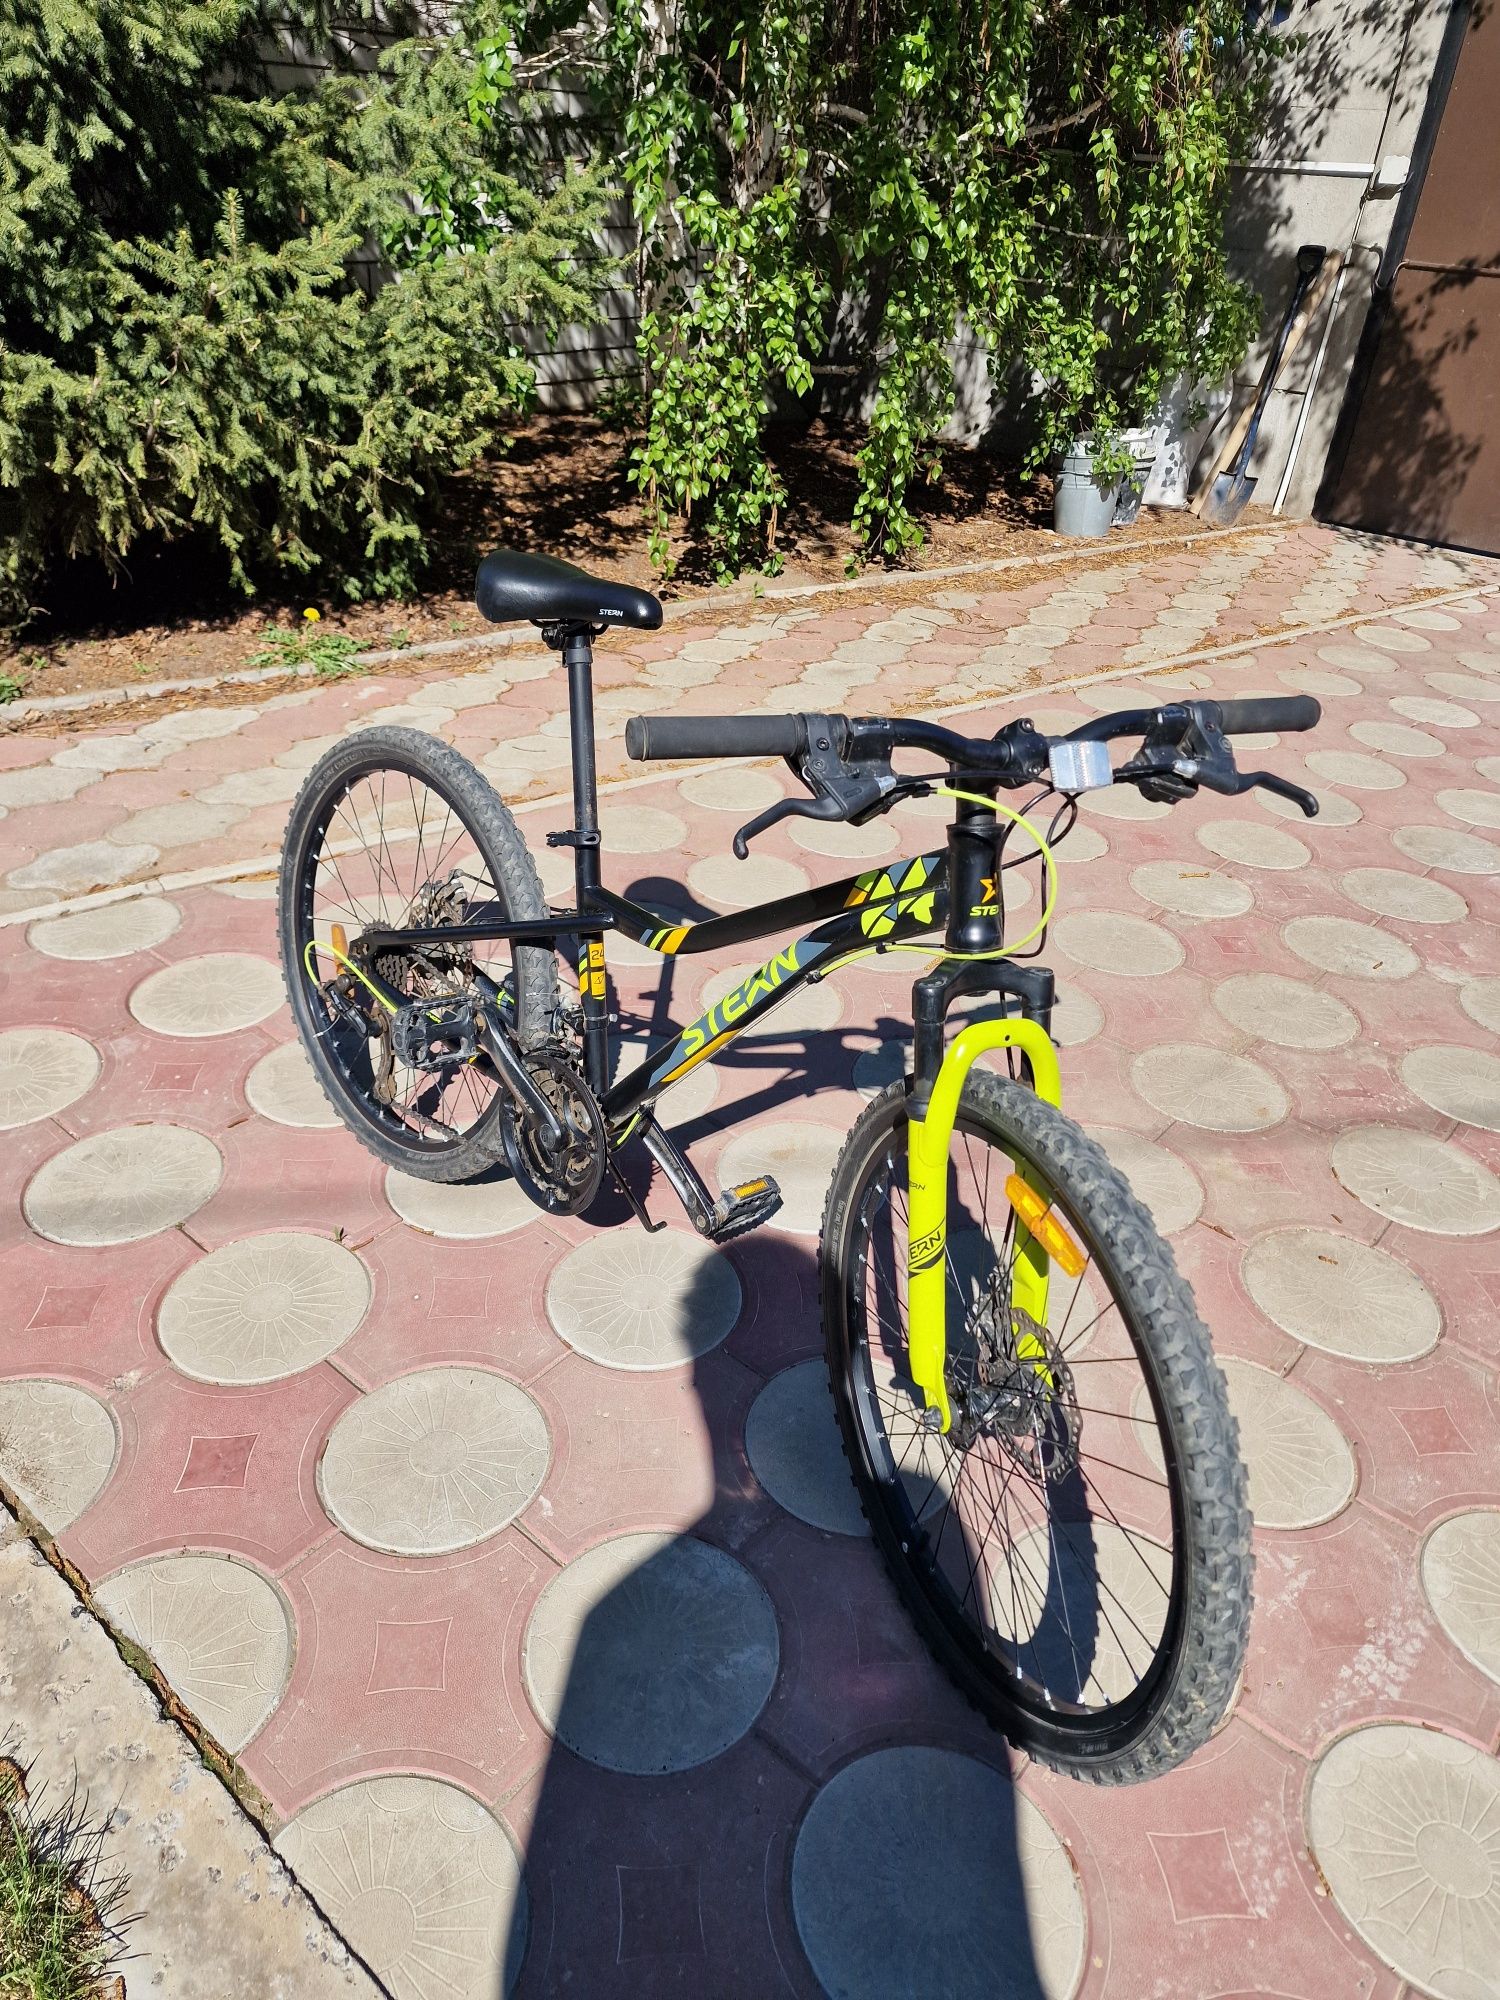 Велосипед детский  на 8-12 лет фирменый Stern Attack   покуп